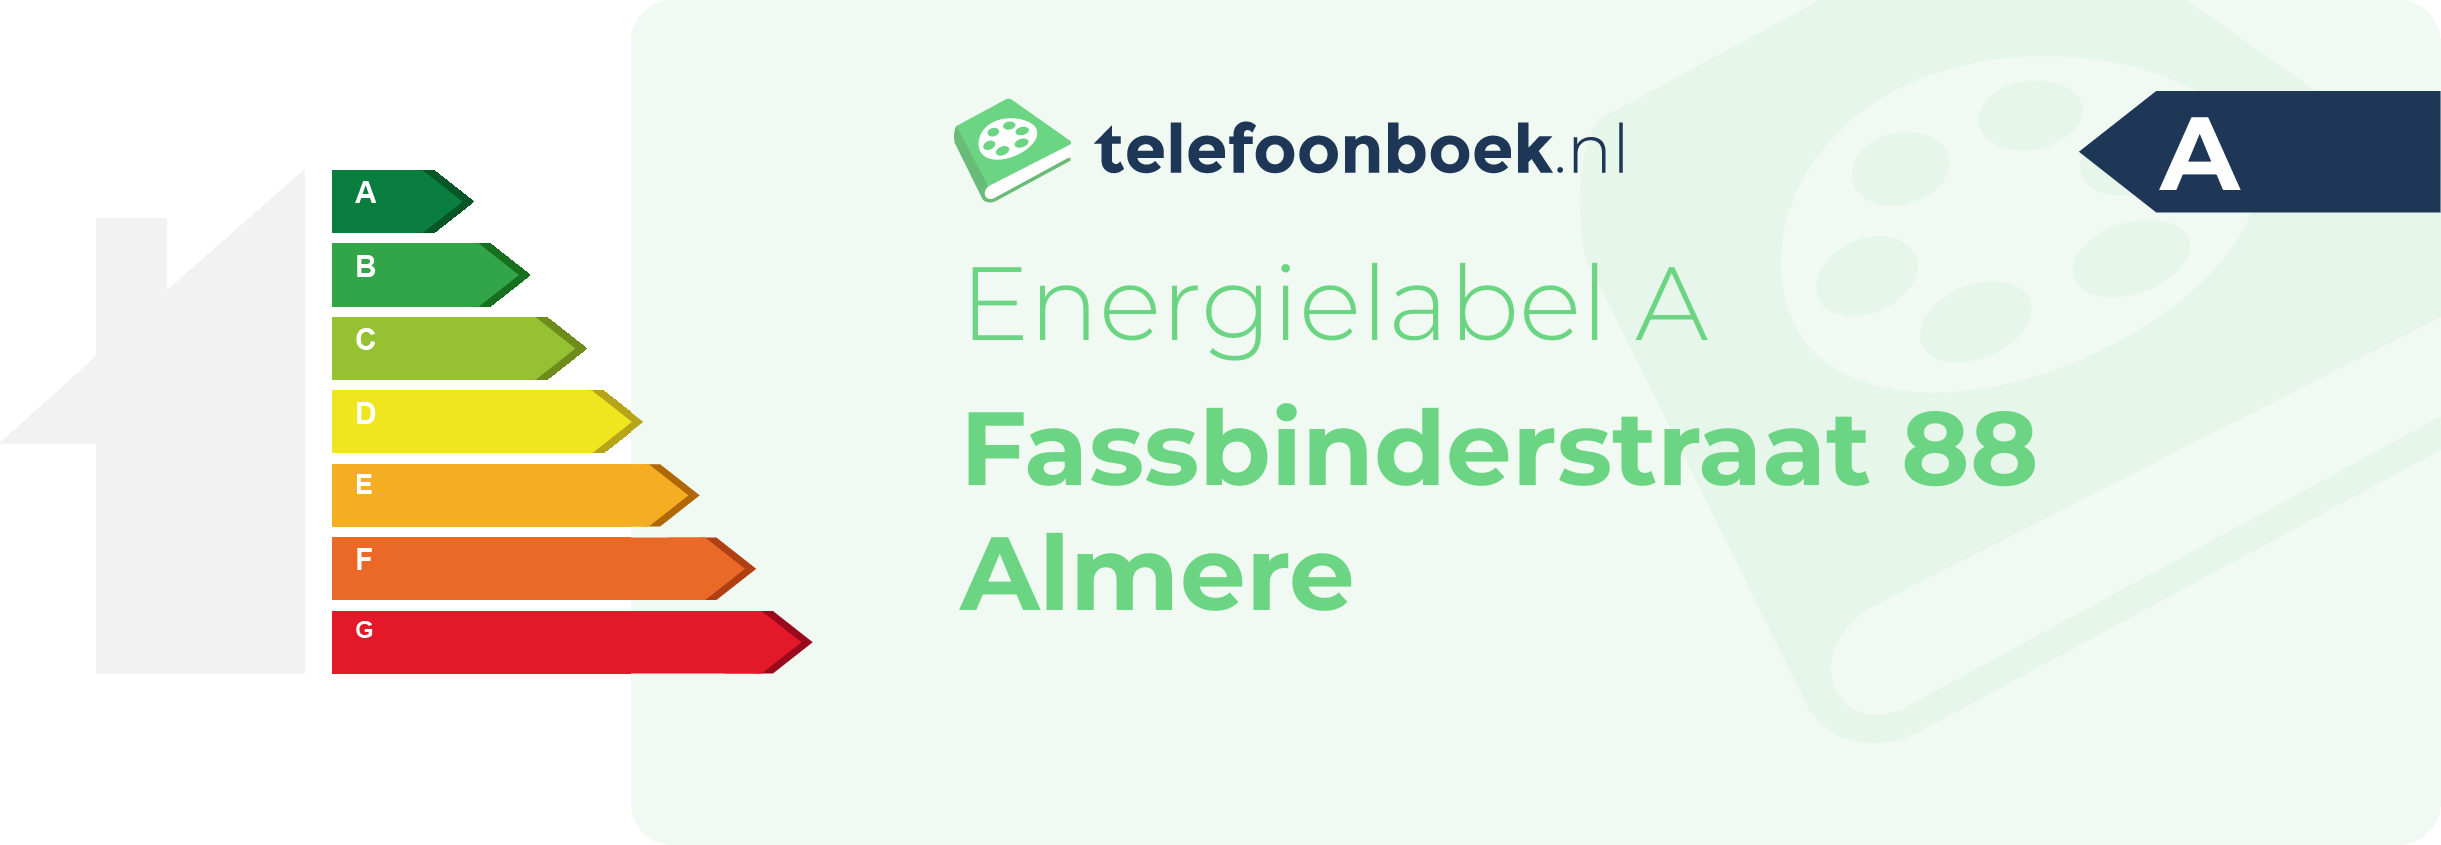 Energielabel Fassbinderstraat 88 Almere